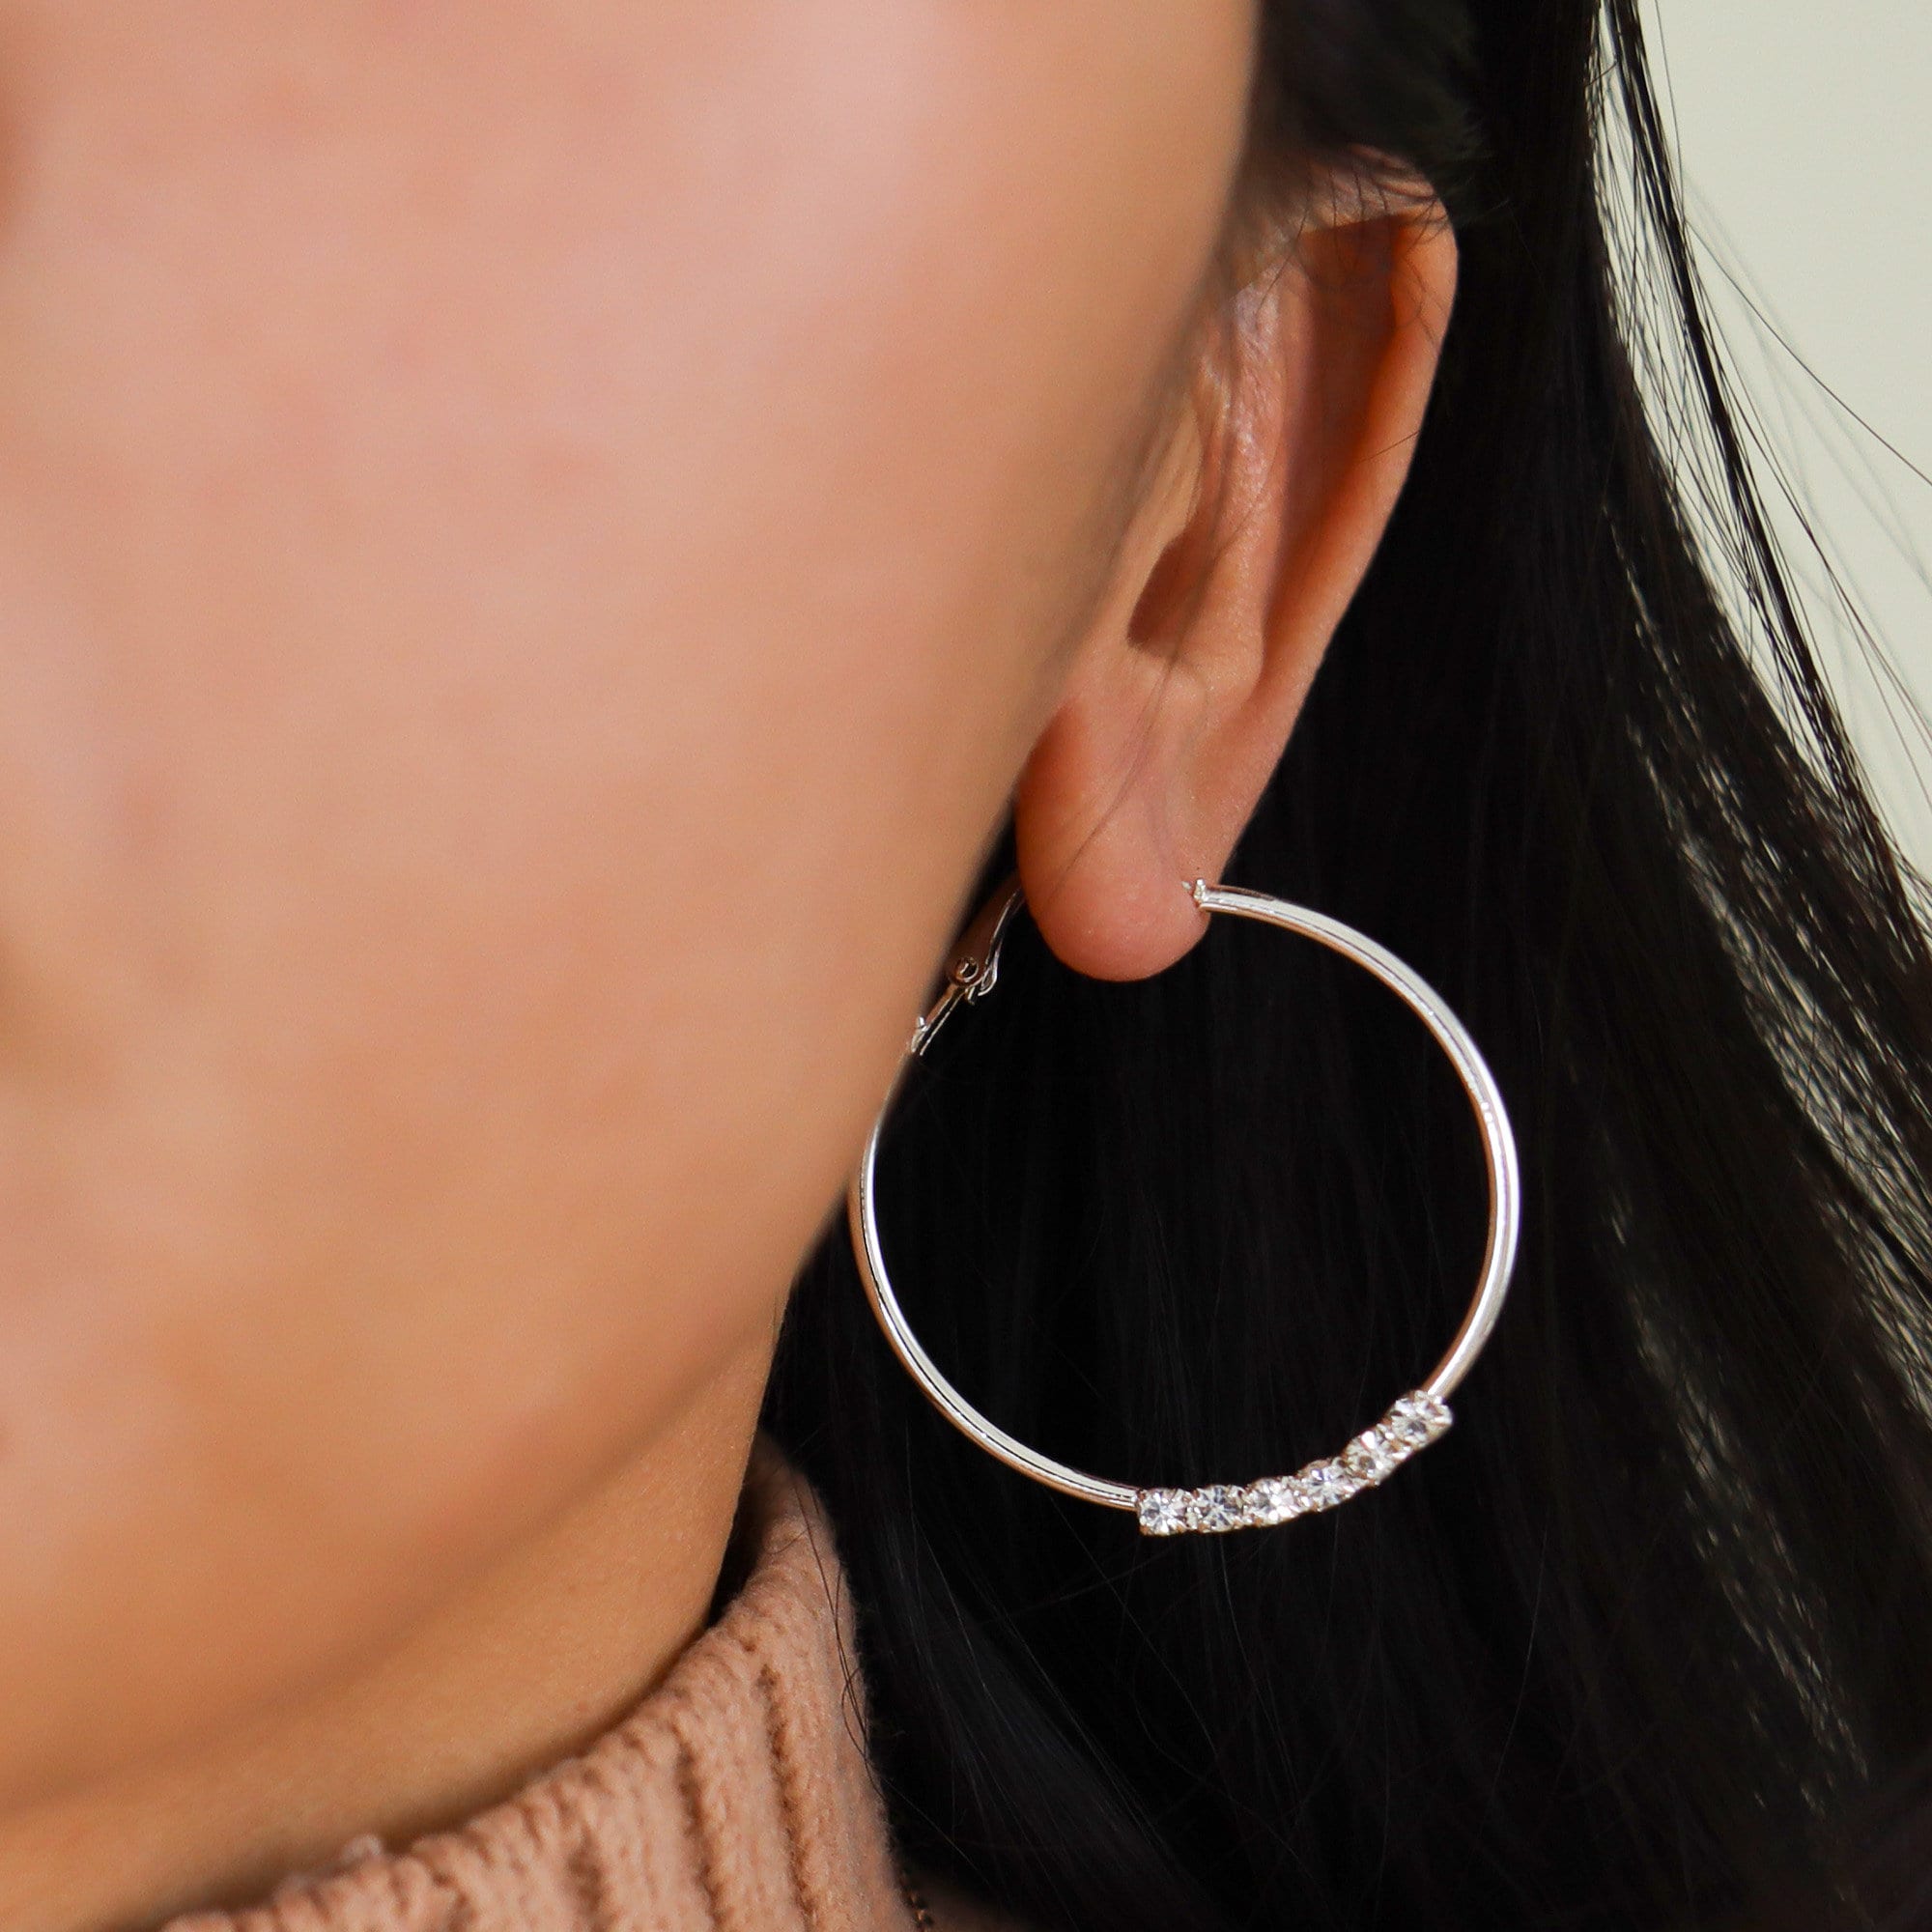 Titanium 4cm Large Pearl Rhinestones Stud Earrings, Non Tarnish Earrings, Implant Grade Titanium Waterproof Earrings, Vintage Style, Minimal